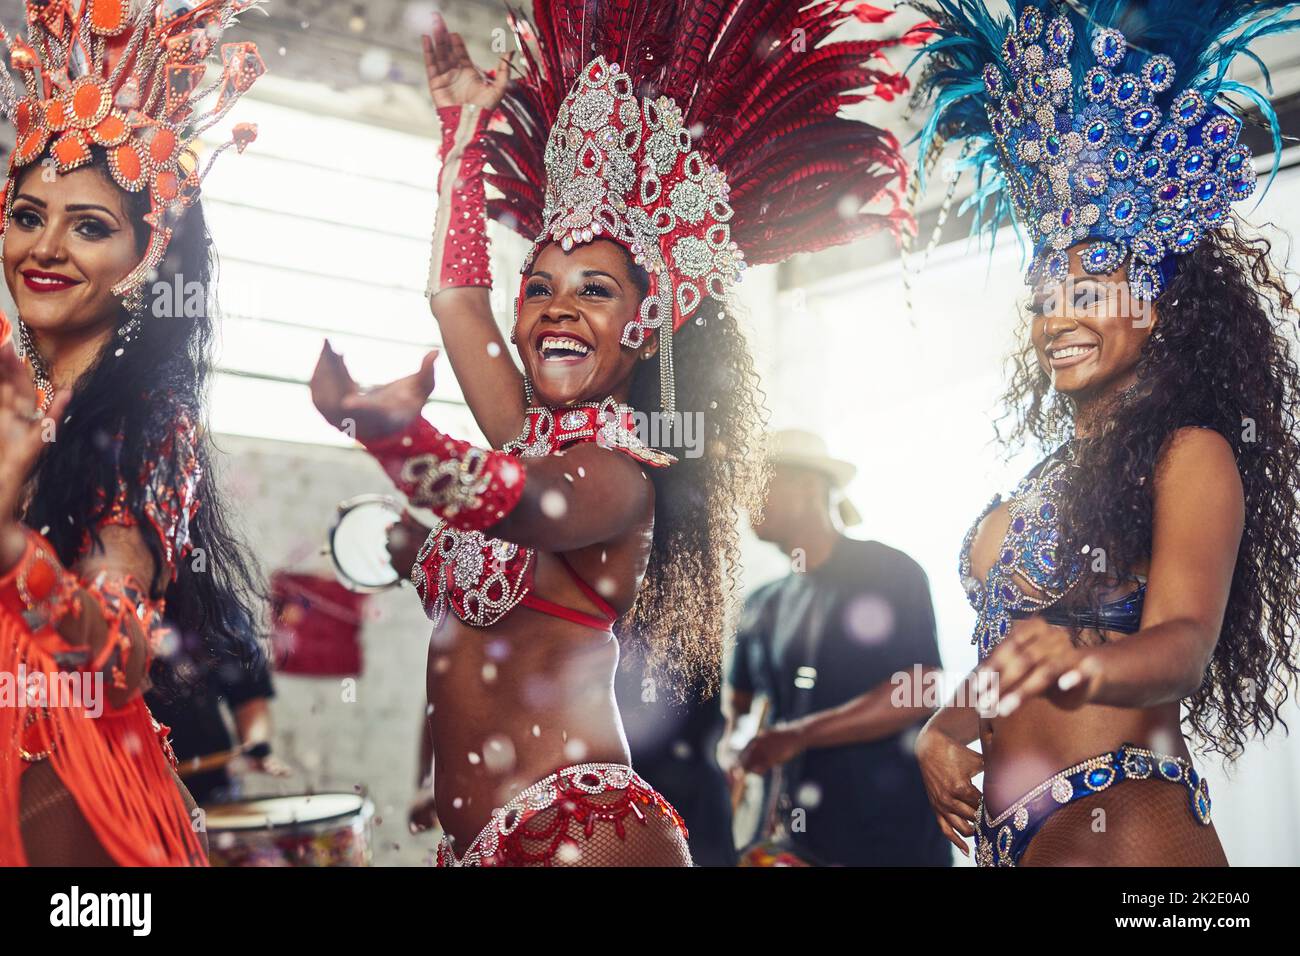 Venez passer des fêtes avec nous. Prise de vue de danseurs de samba dans un carnaval. Banque D'Images